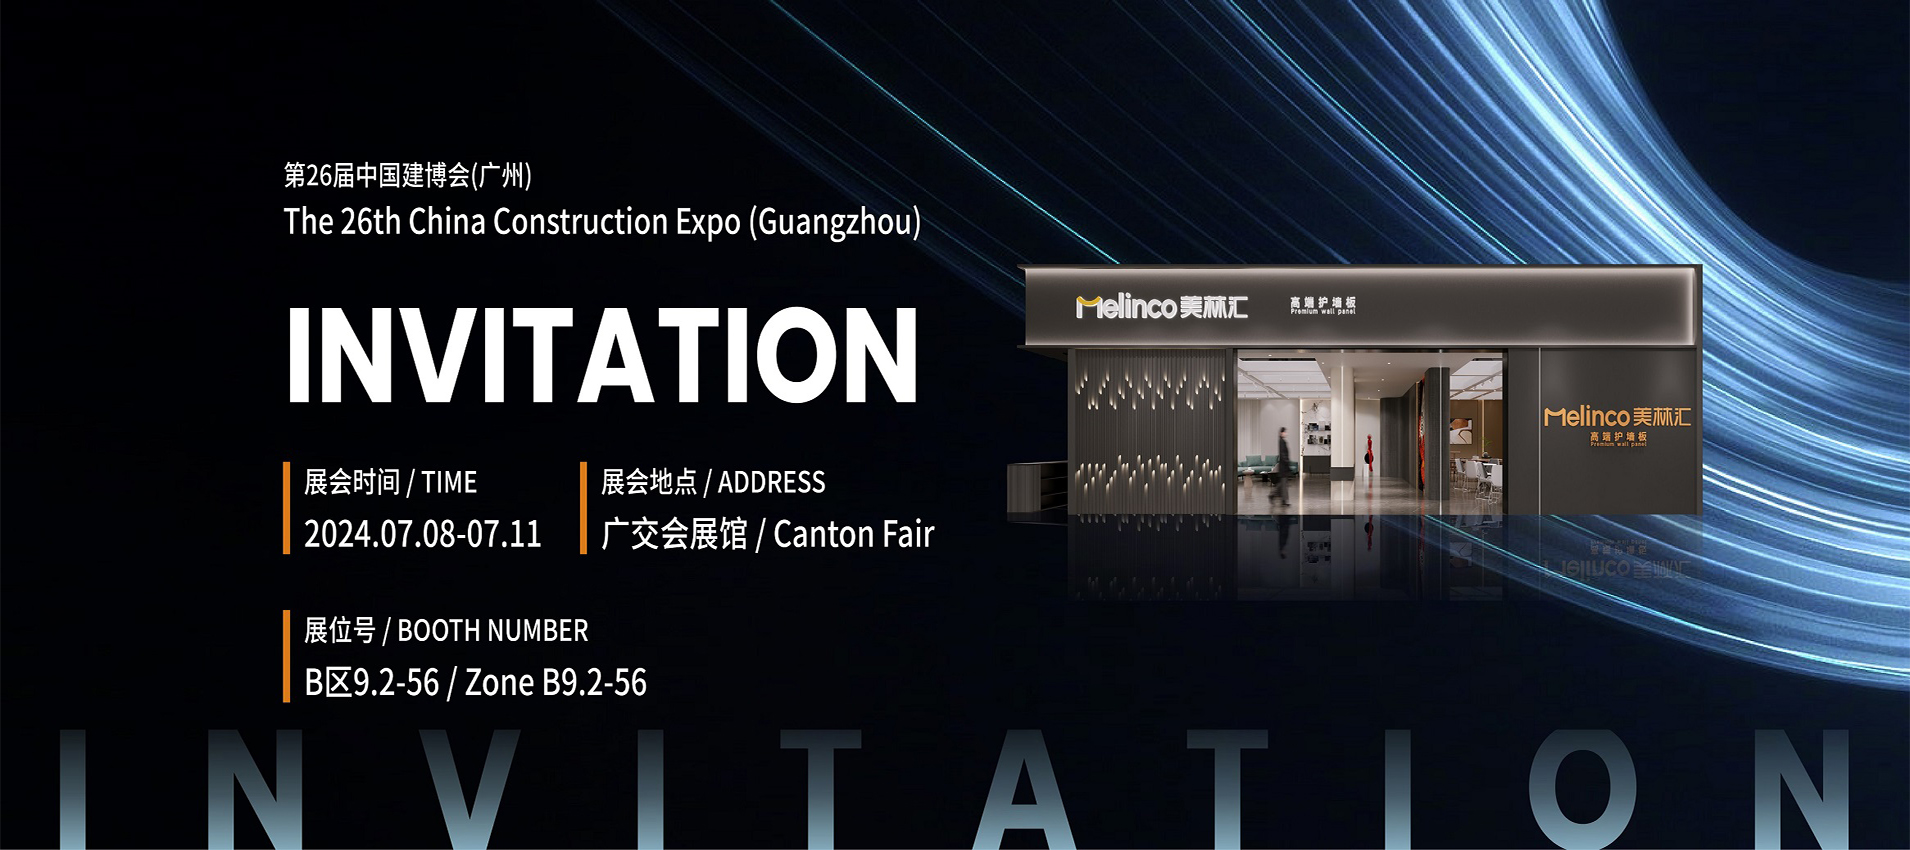 The 26th China Construction Expo (Guangzhou)